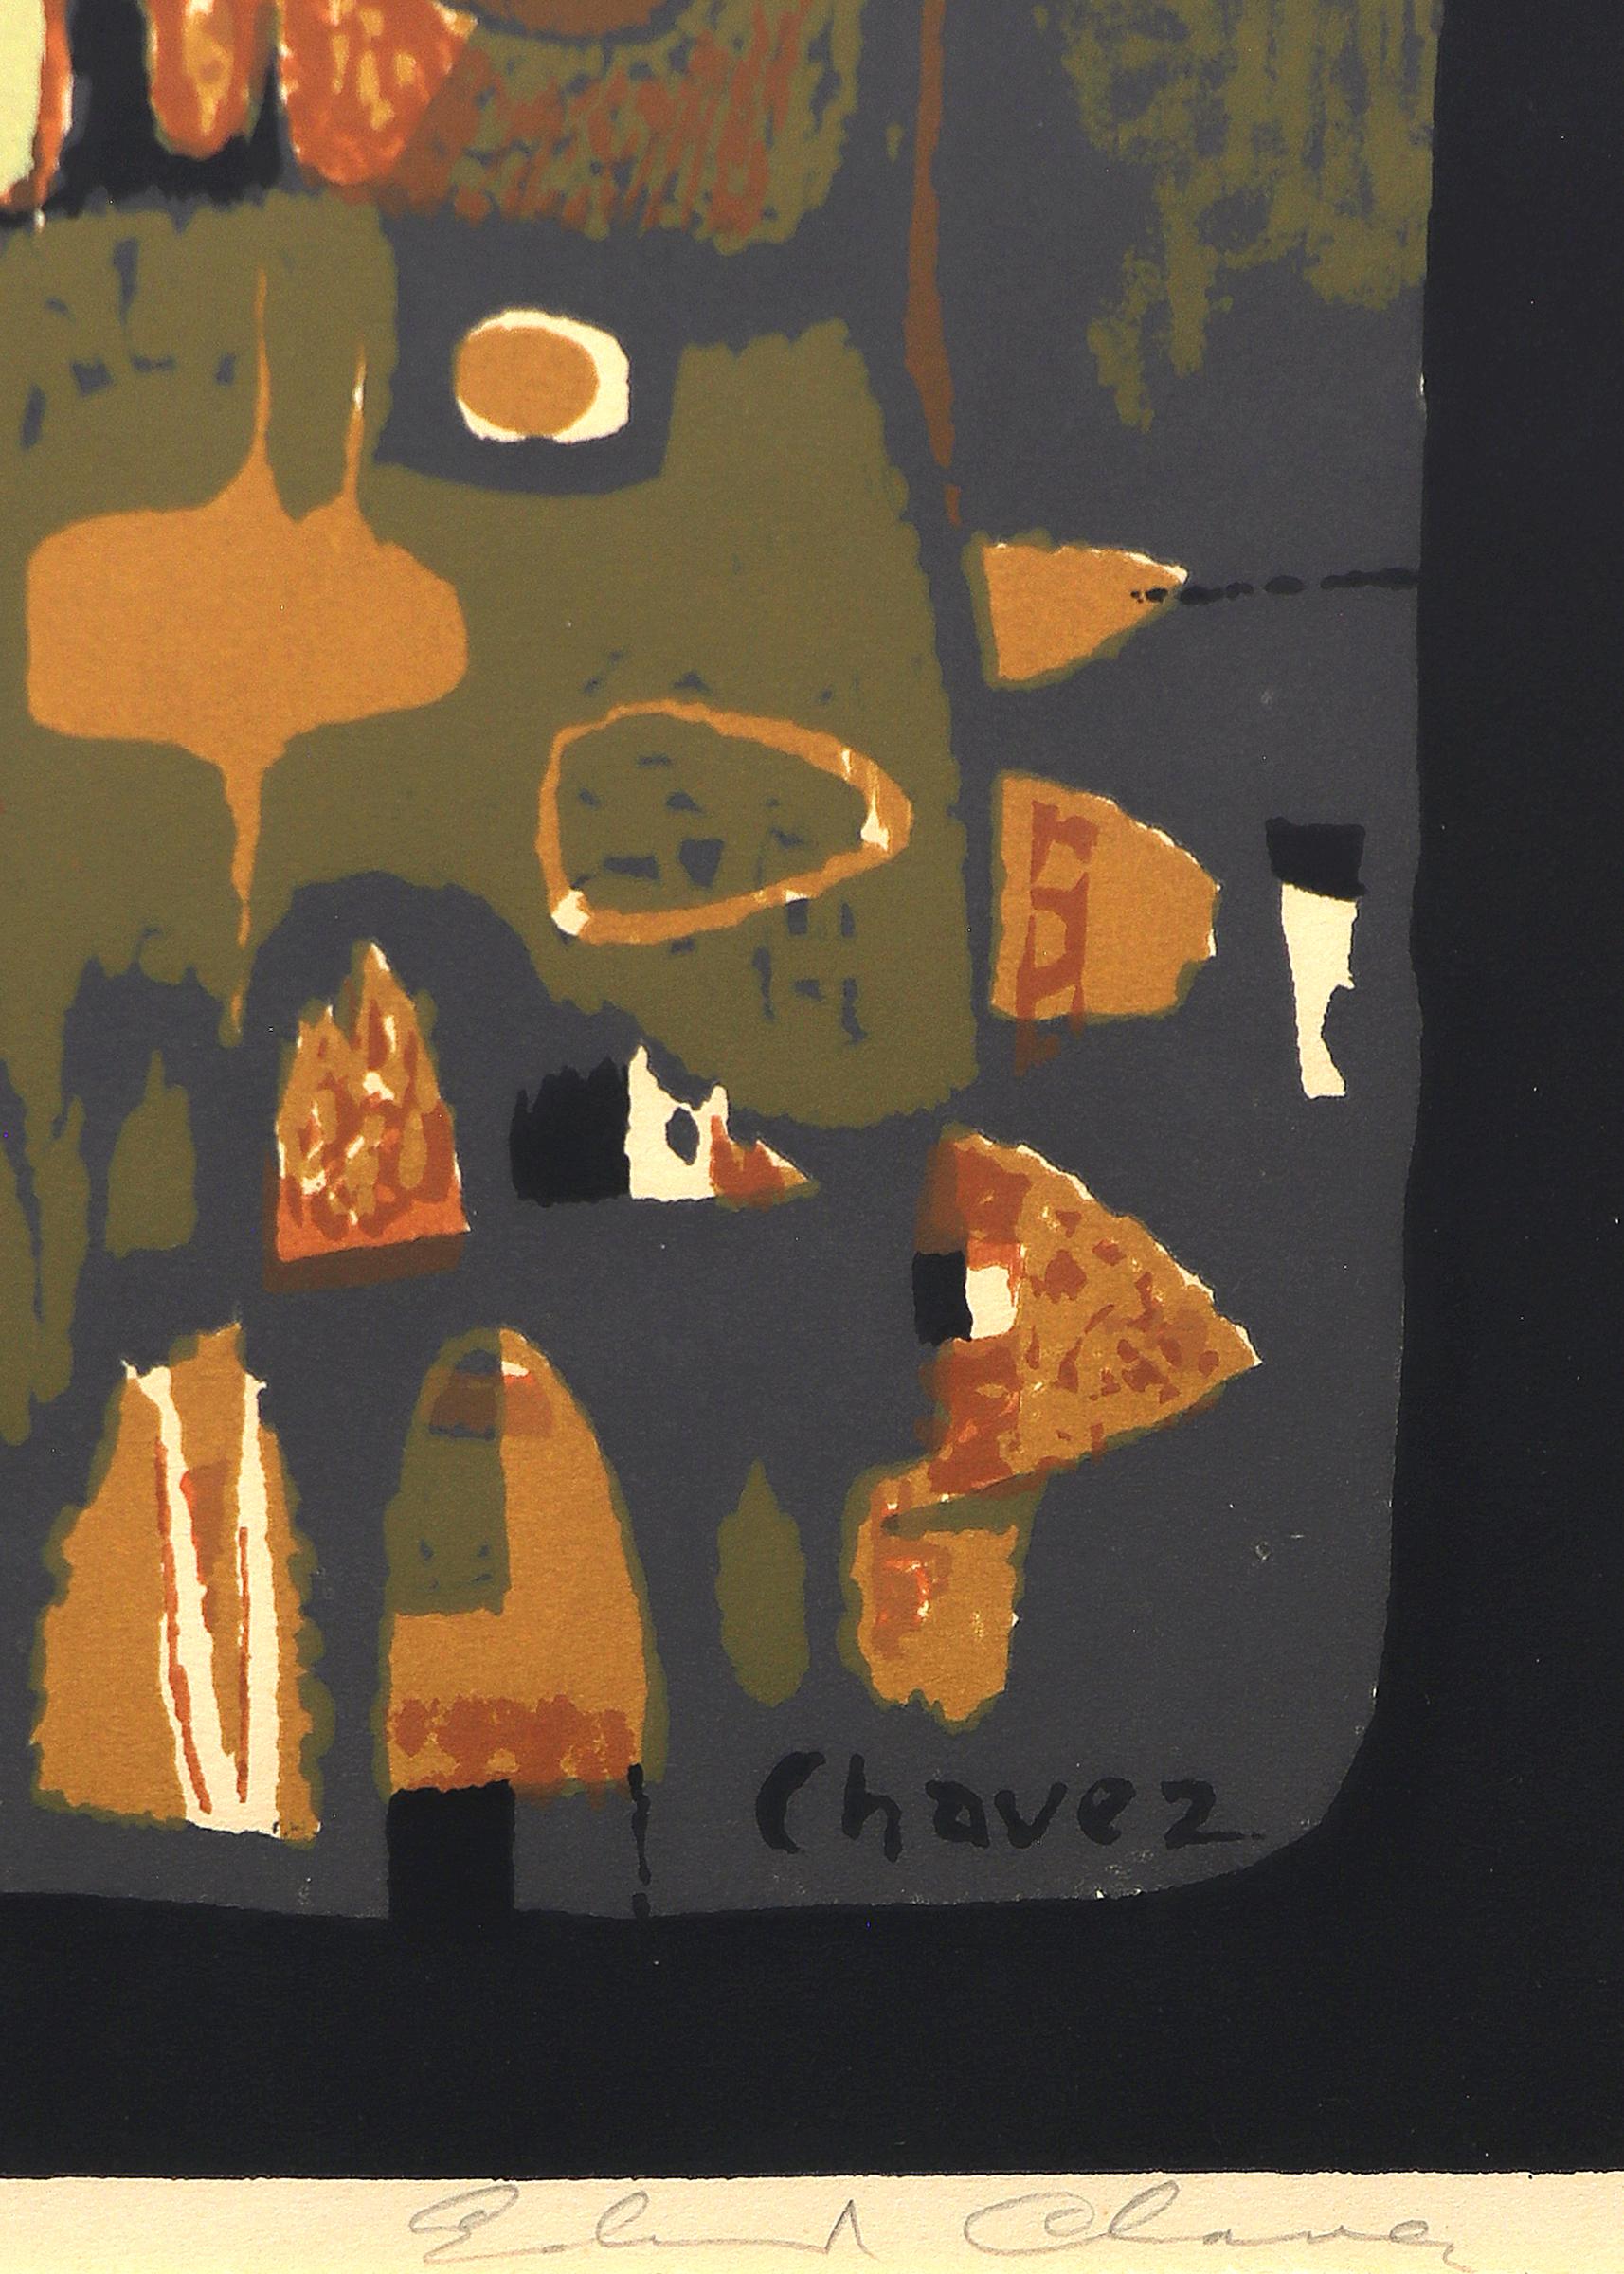 Tours gothiques, sérigraphie moderne abstraite des années 1950, orange, marron, vert - Beige Abstract Print par Edward Chavez